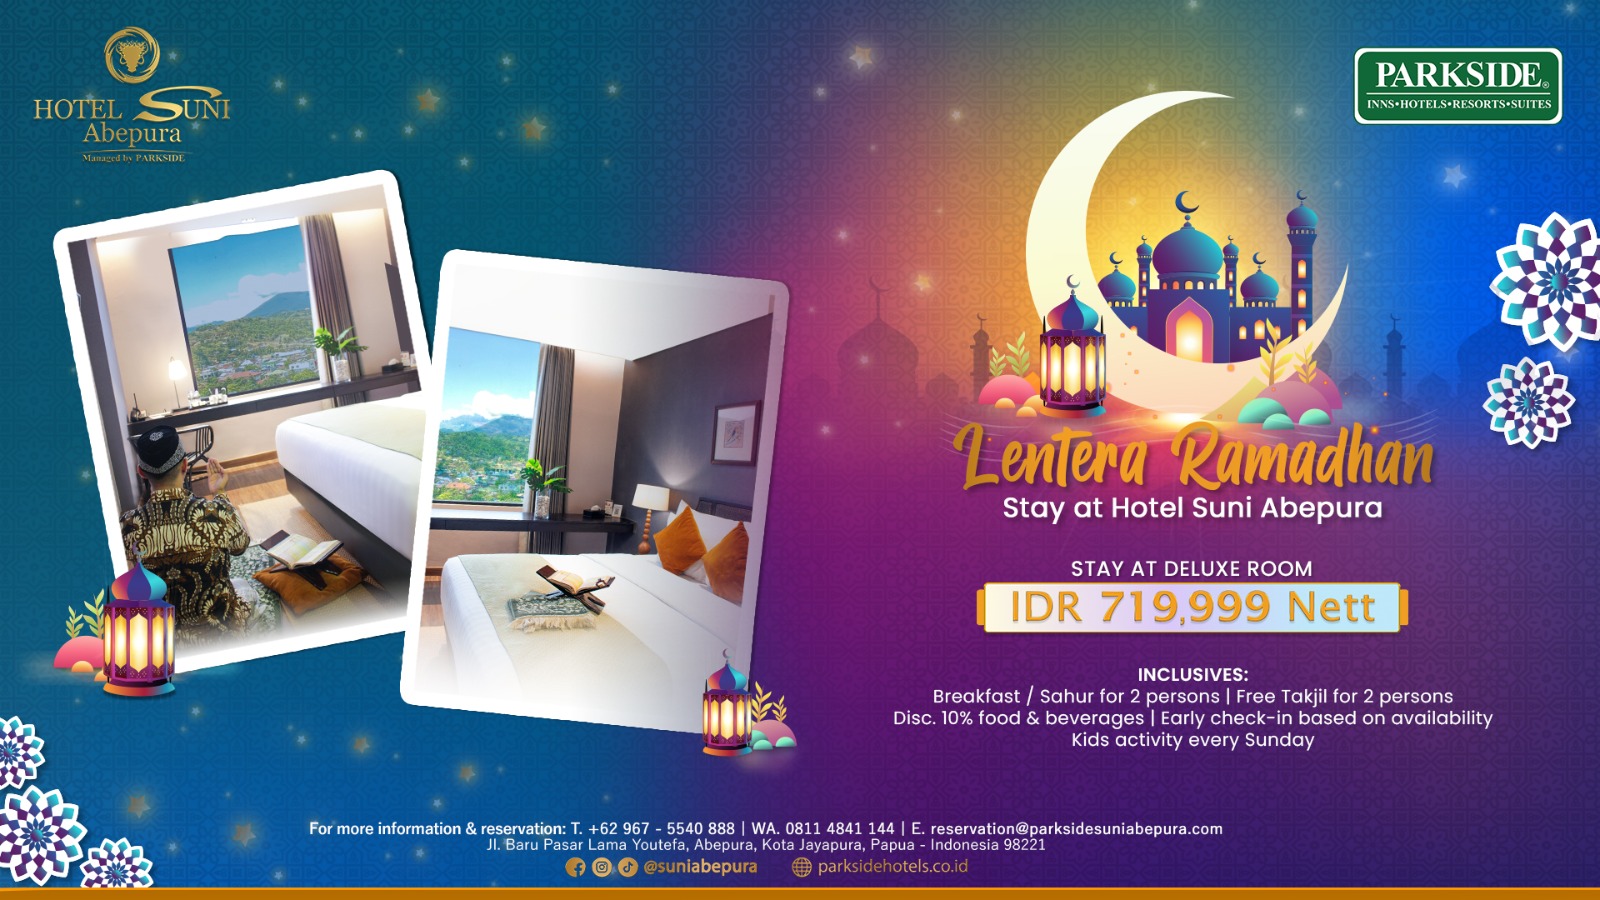 Jangan Lewatkan Kesempatan Ini! Pesan Sekarang Promo "Lentera Ramadhan" di Suni Hotel & Convention Abepura!